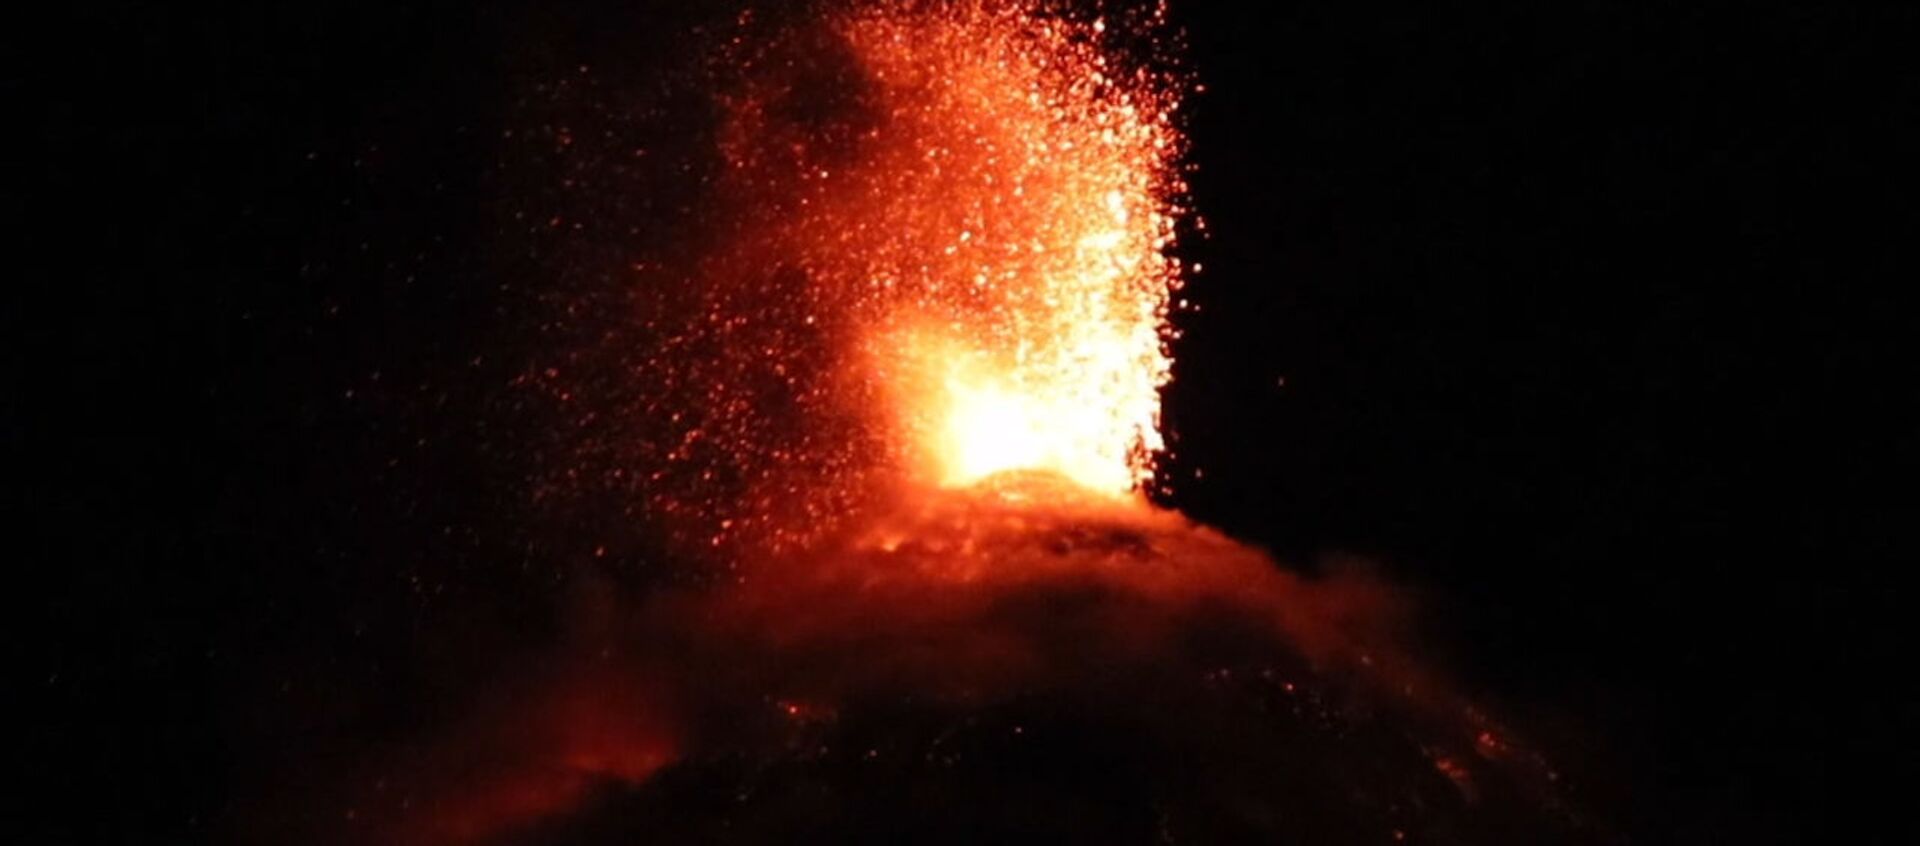 Беспокойный вулкан Фуэго в Гватемале - Sputnik Latvija, 1920, 22.11.2018